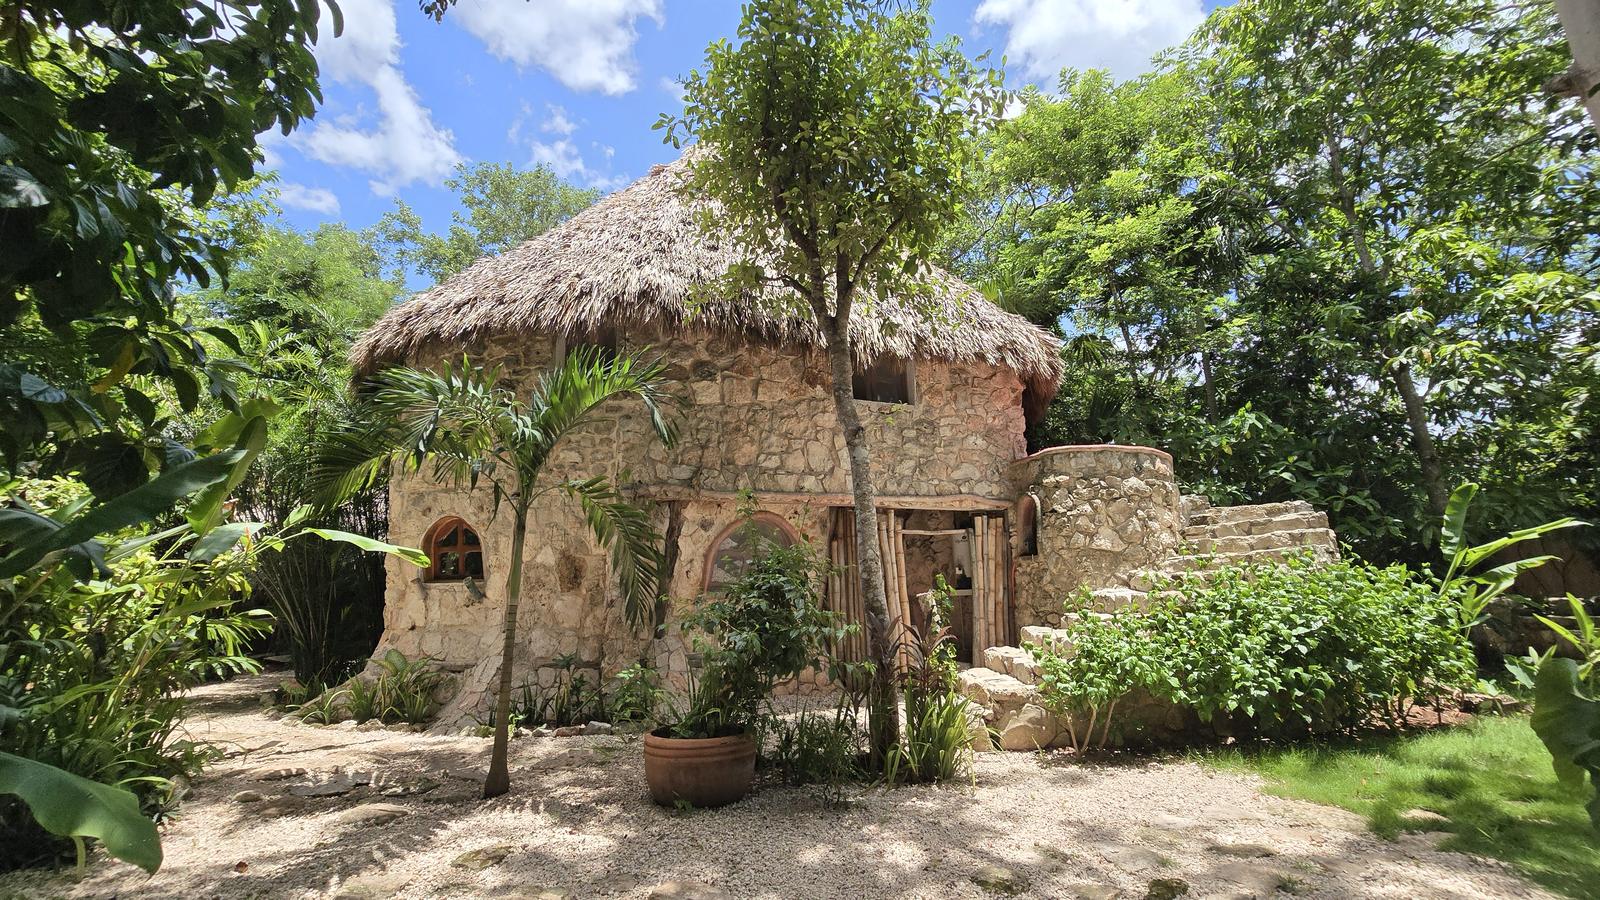 Encantadora Casa Rústica con Piscina y Jardín en Venta  Ek Balam, Yucatán